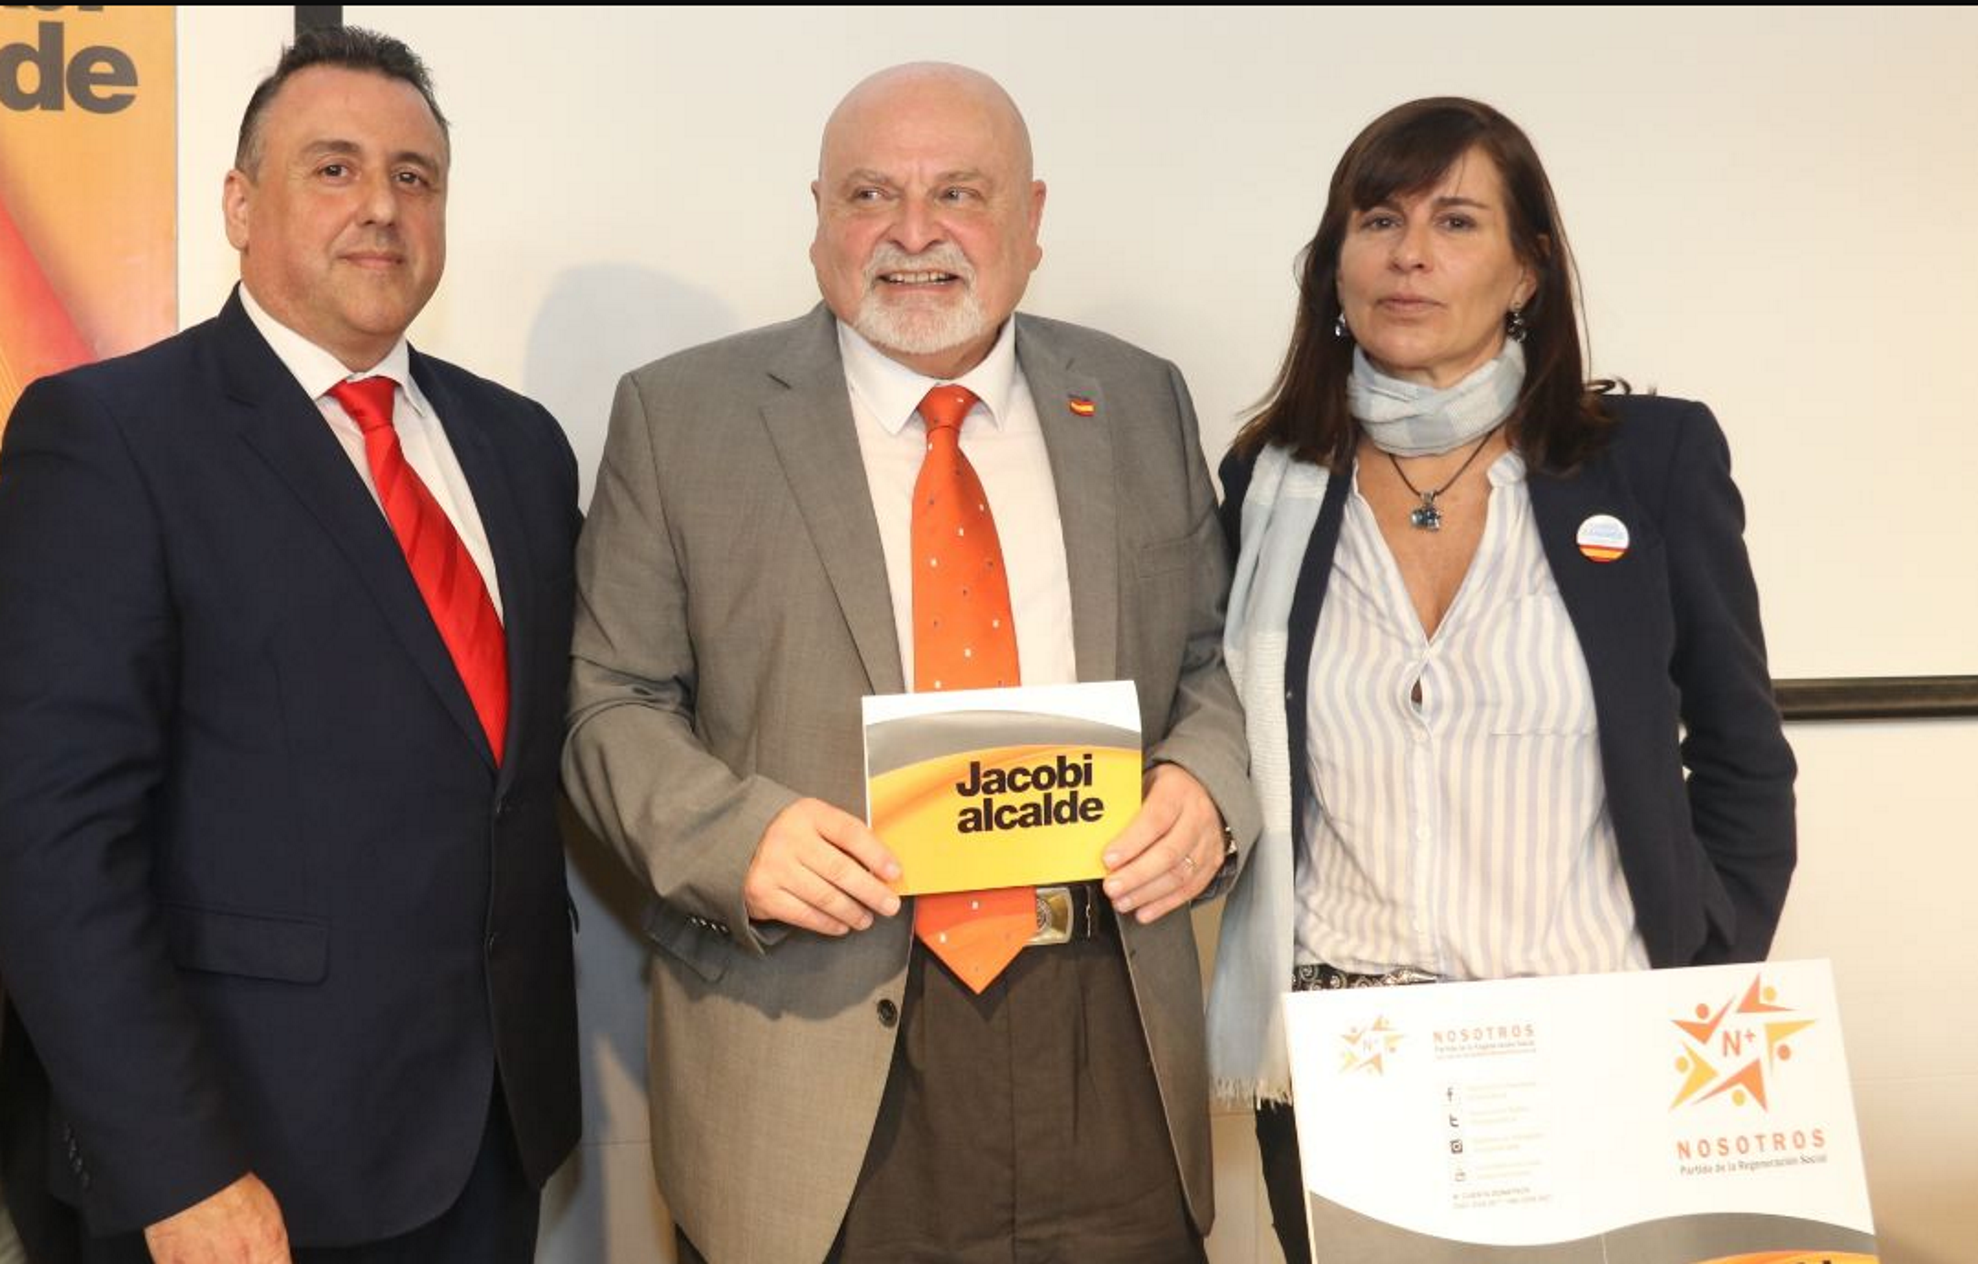 La candidatura del españolista Karl Jacobi naufraga antes de empezar